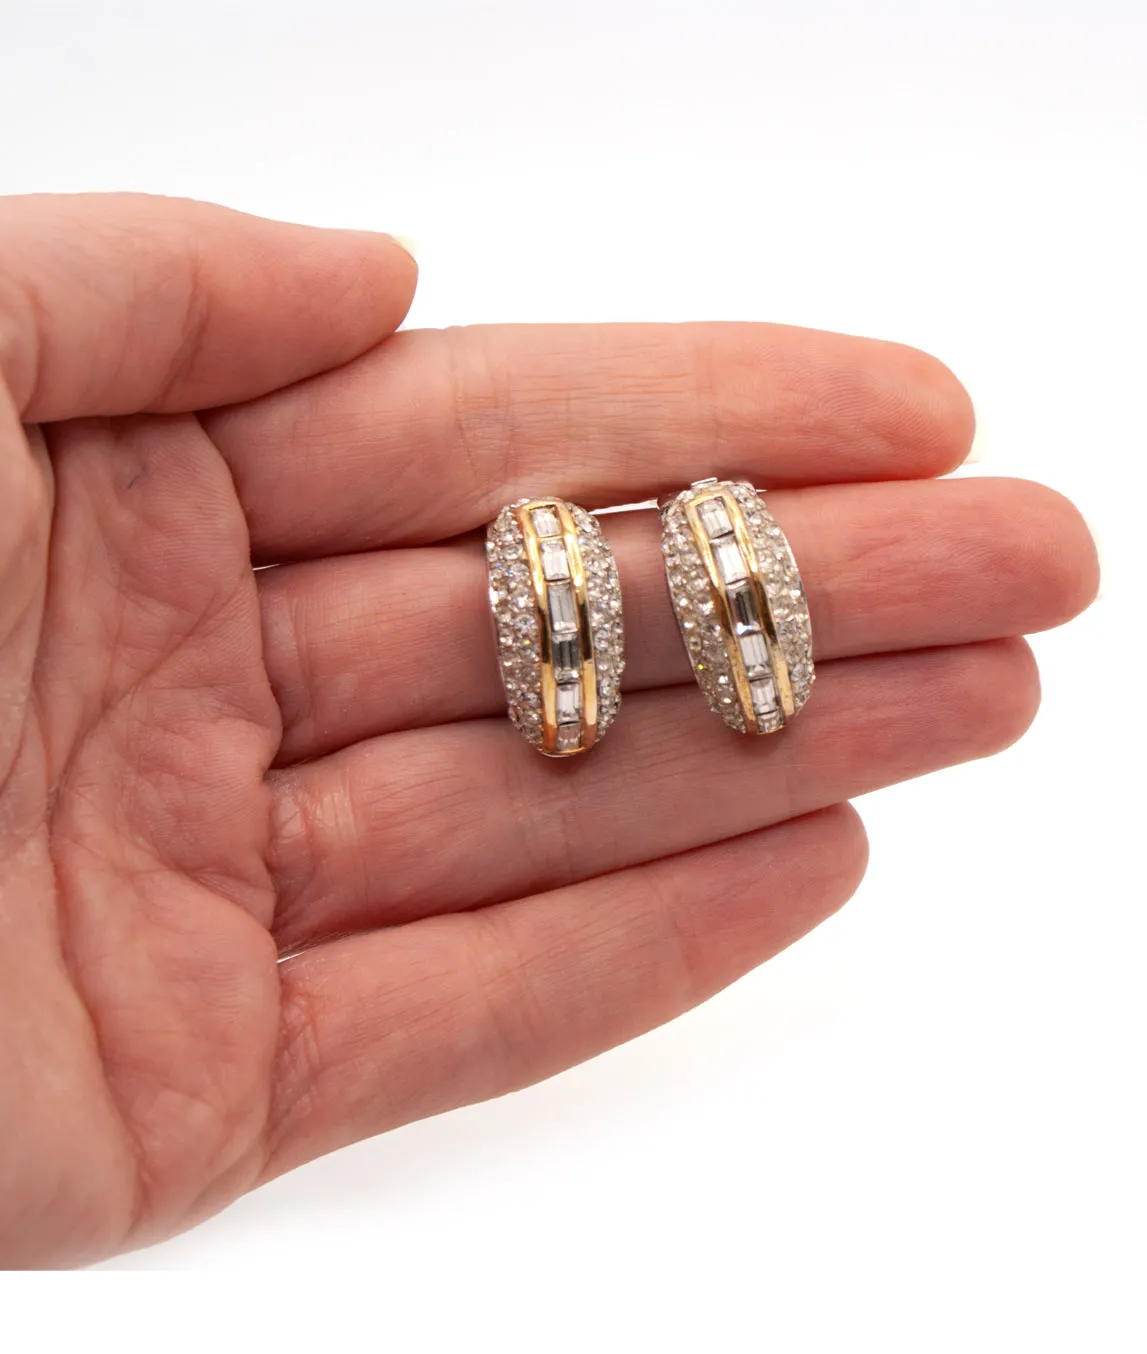 Vintage 1980s Christian Dior demi hoop earrings with rhinestones held in hand